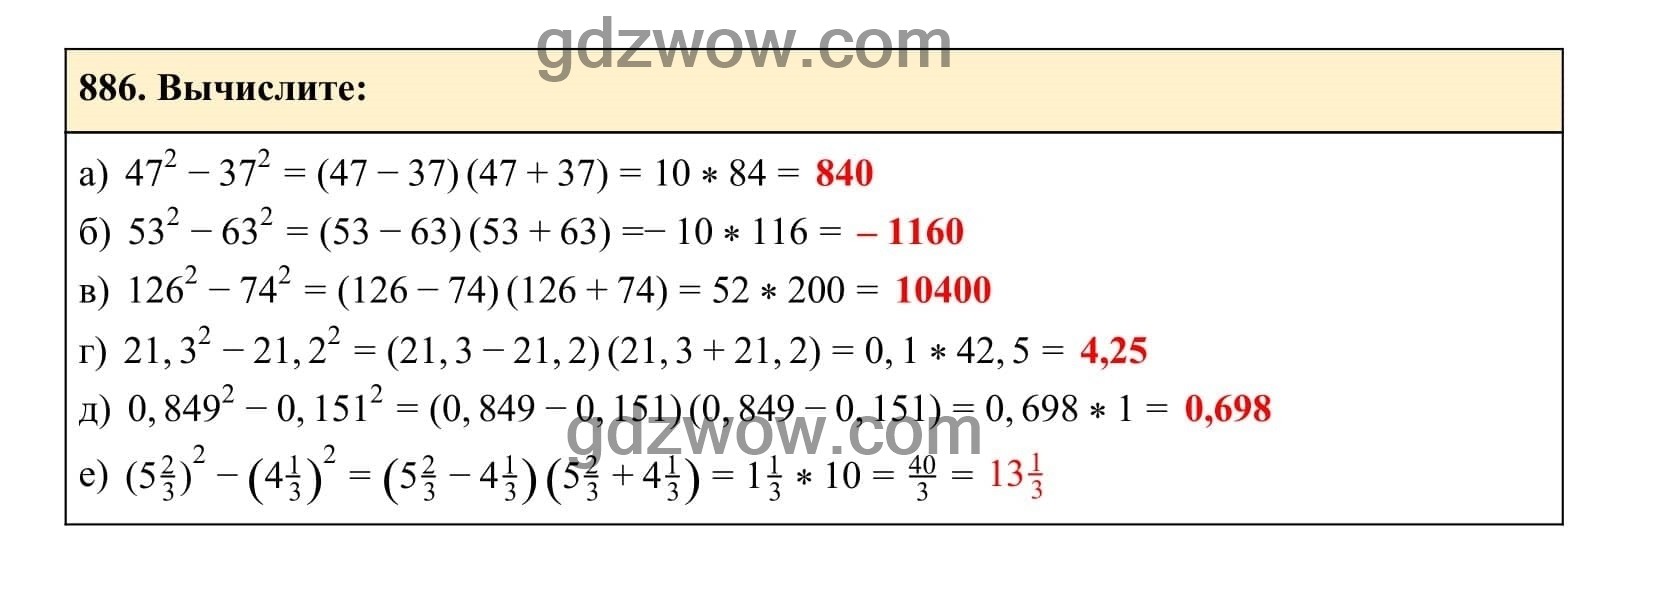 Упражнение 886 - ГДЗ по Алгебре 7 класс Учебник Макарычев (решебник) - GDZwow